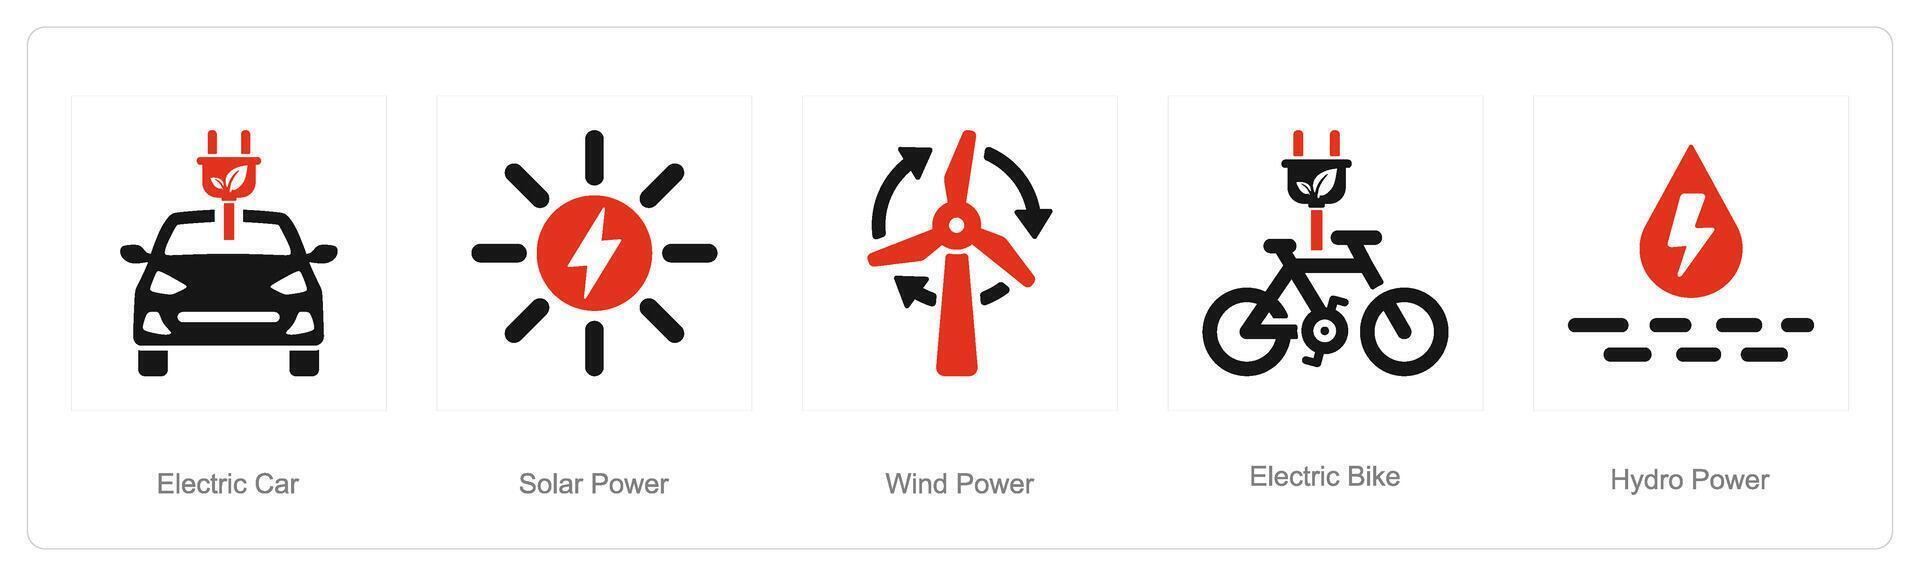 uma conjunto do 5 ecologia ícones Como elétrico carro, solar poder, vento poder vetor